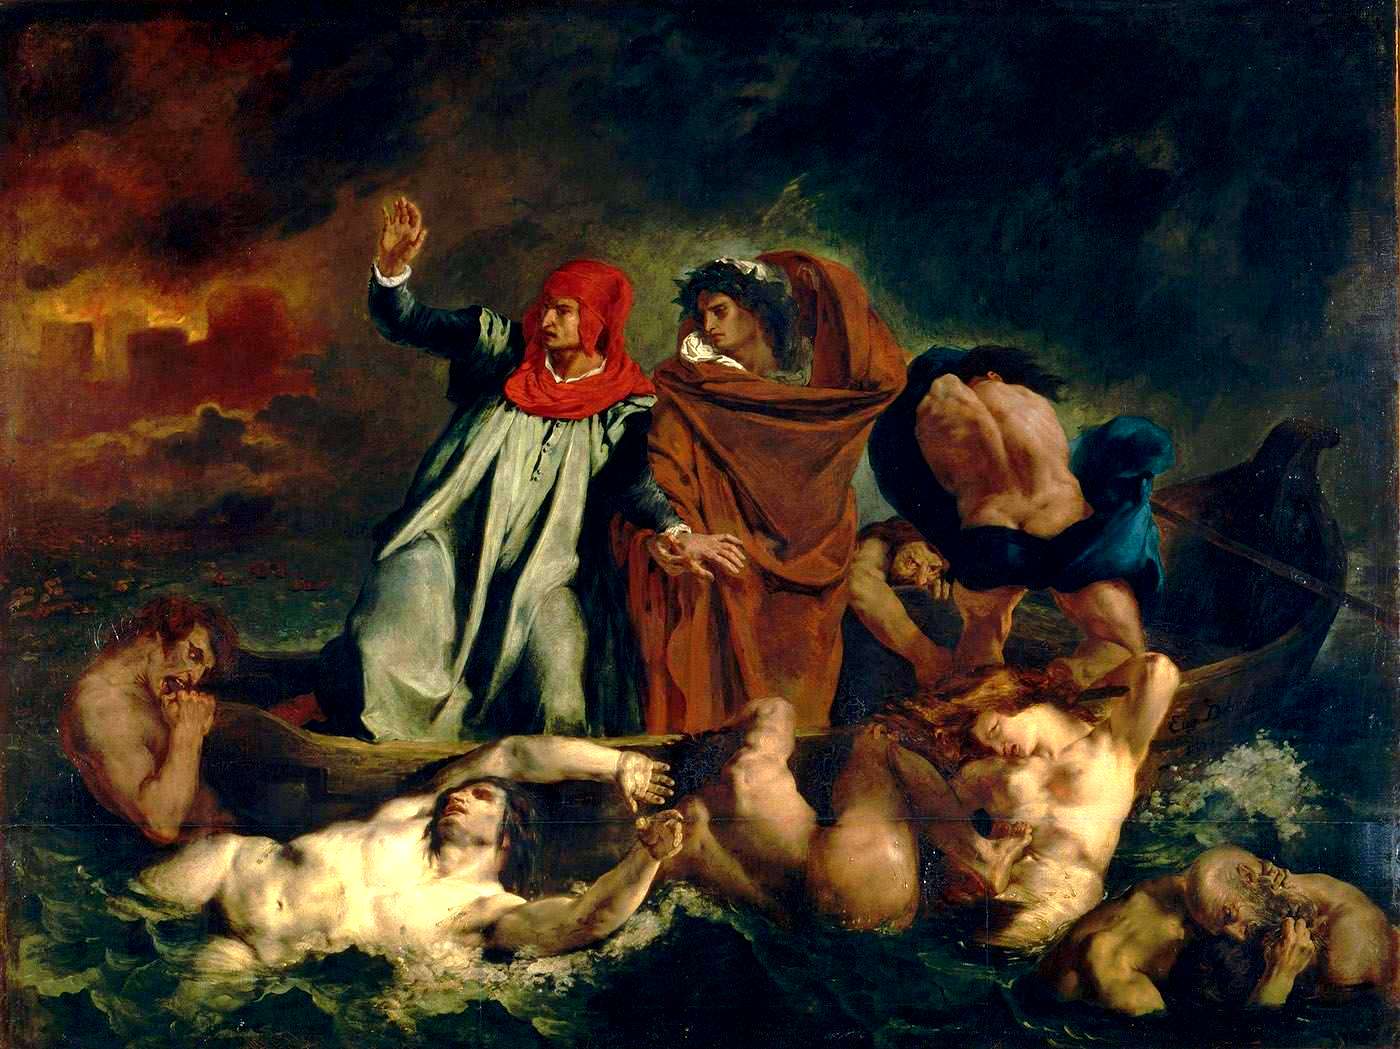 Eugène_Ferdinand_Victor_Delacroix-La Barque de Dante - Don Juan aux enfers - Lovisolo -  Charles Baudelaire - les fleurs du mal